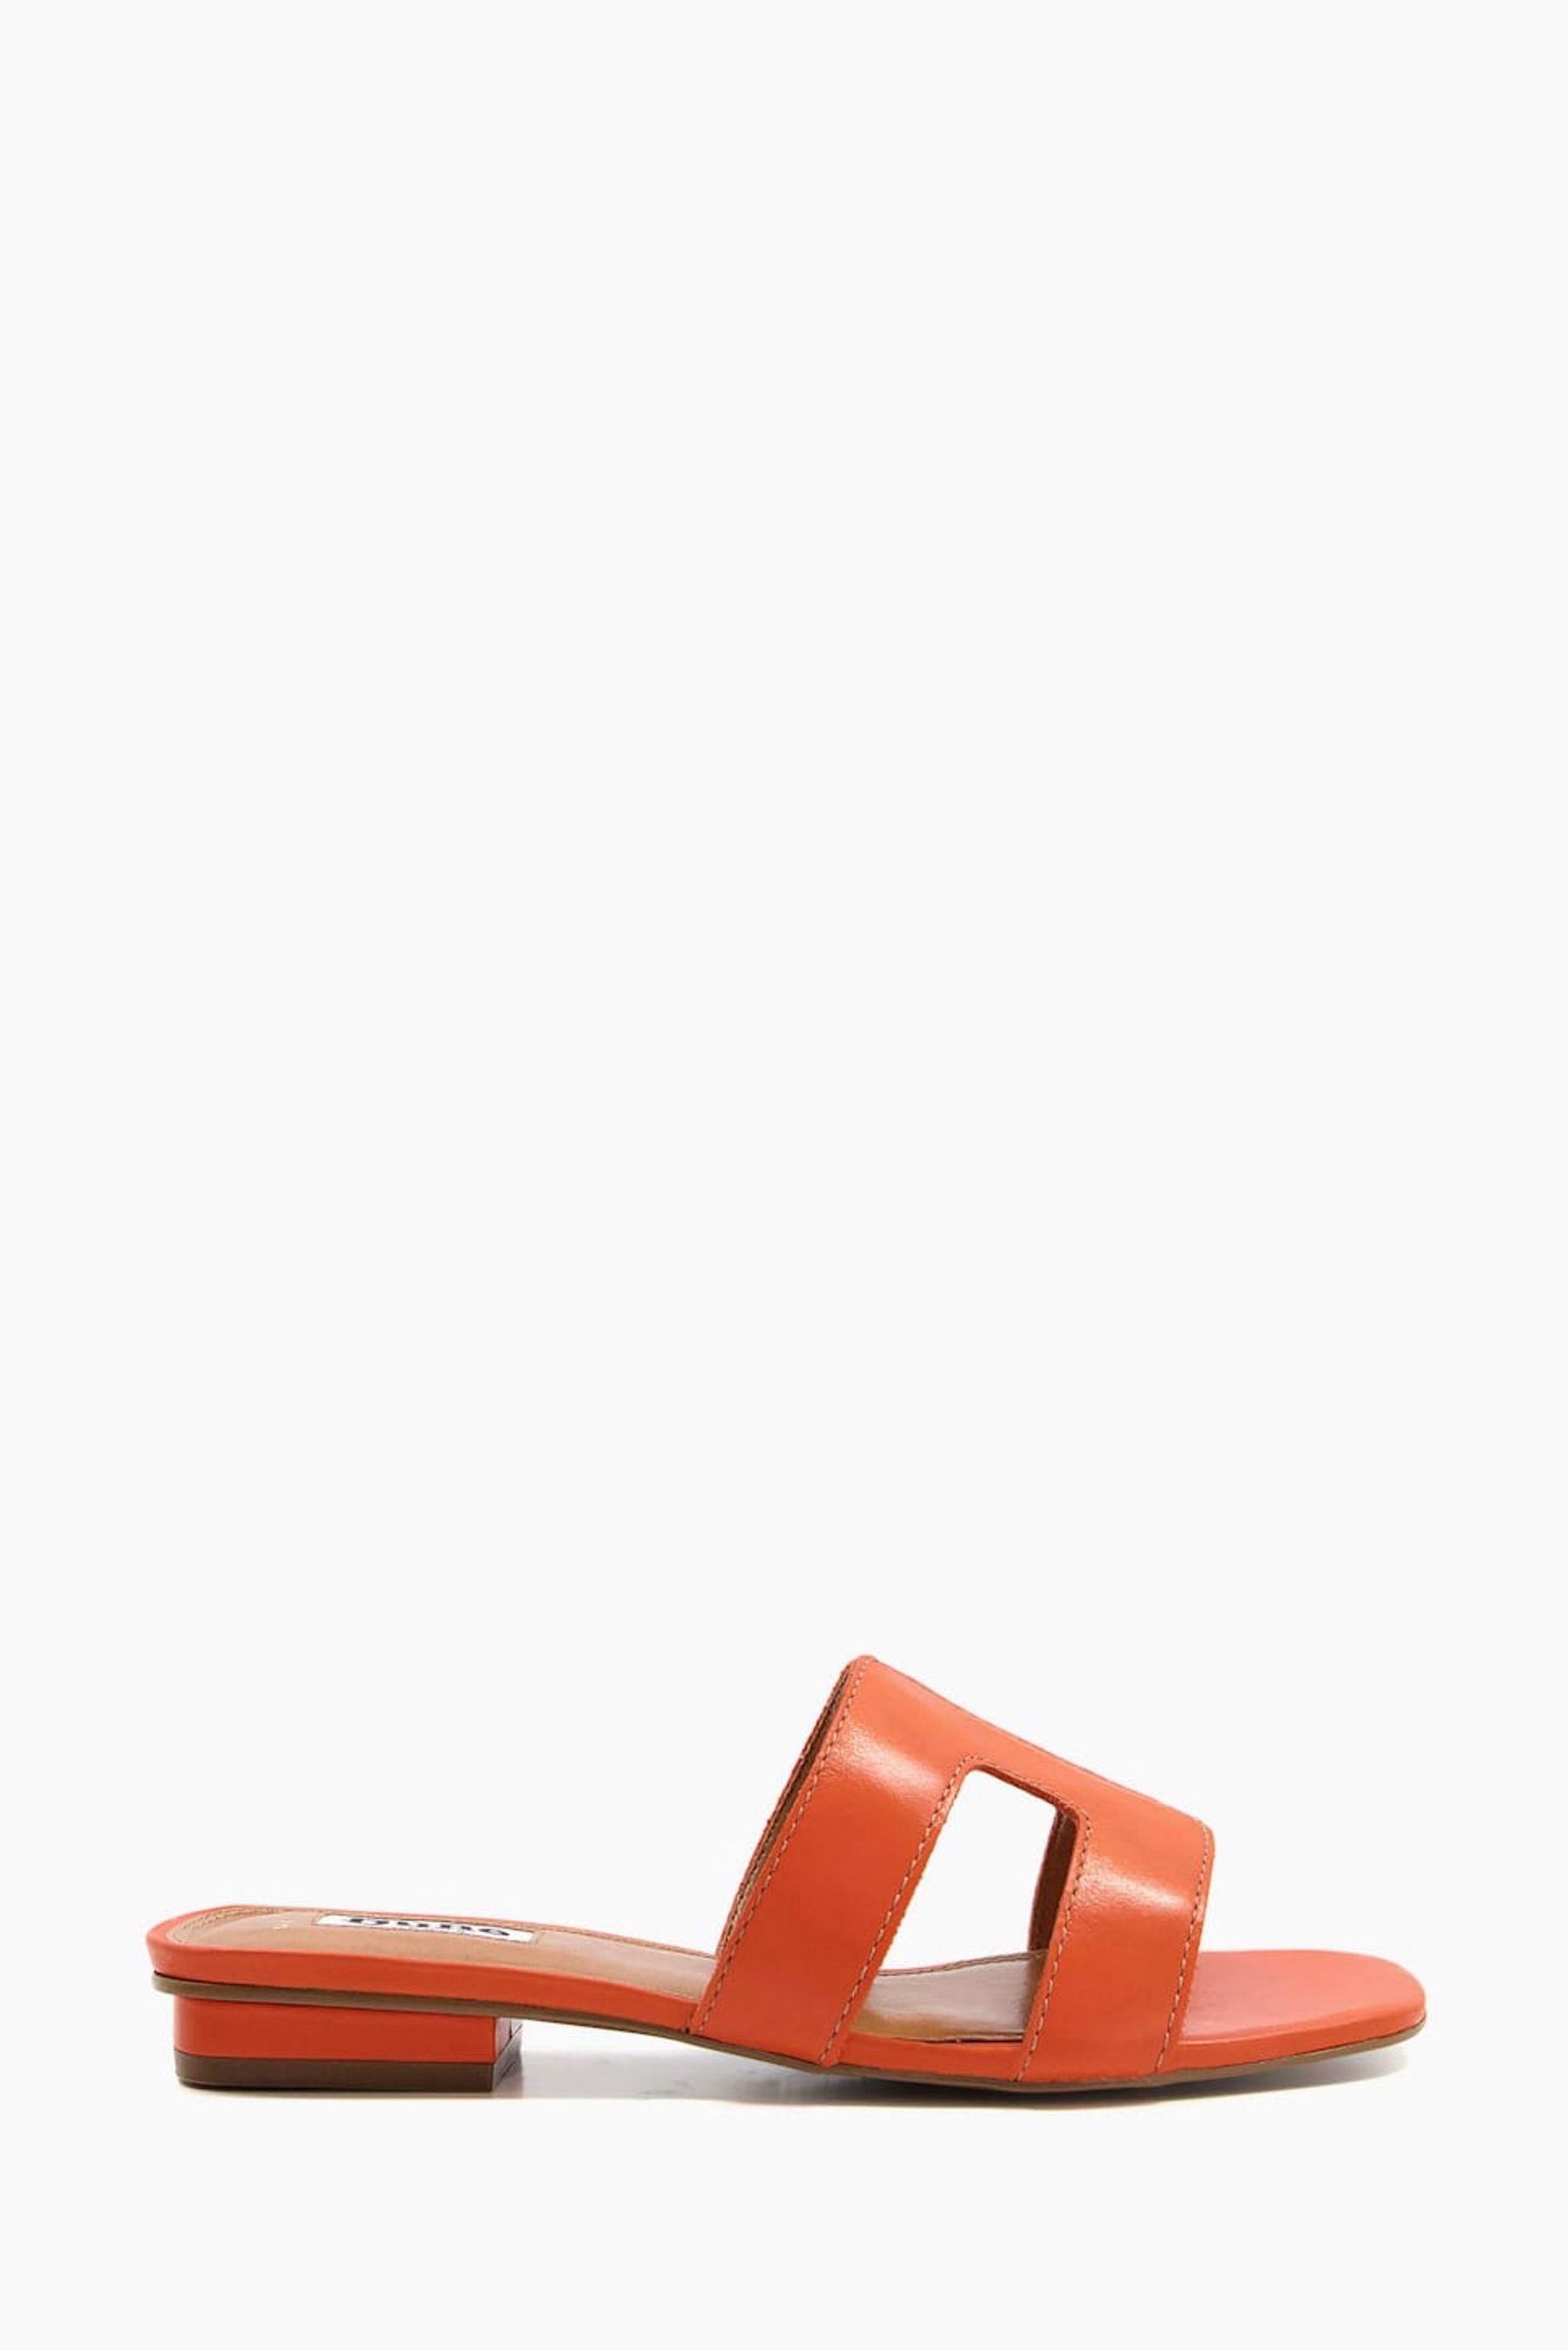 Элегантные сандалии-слипоны Loupe на широкую ногу Dune London, оранжевый